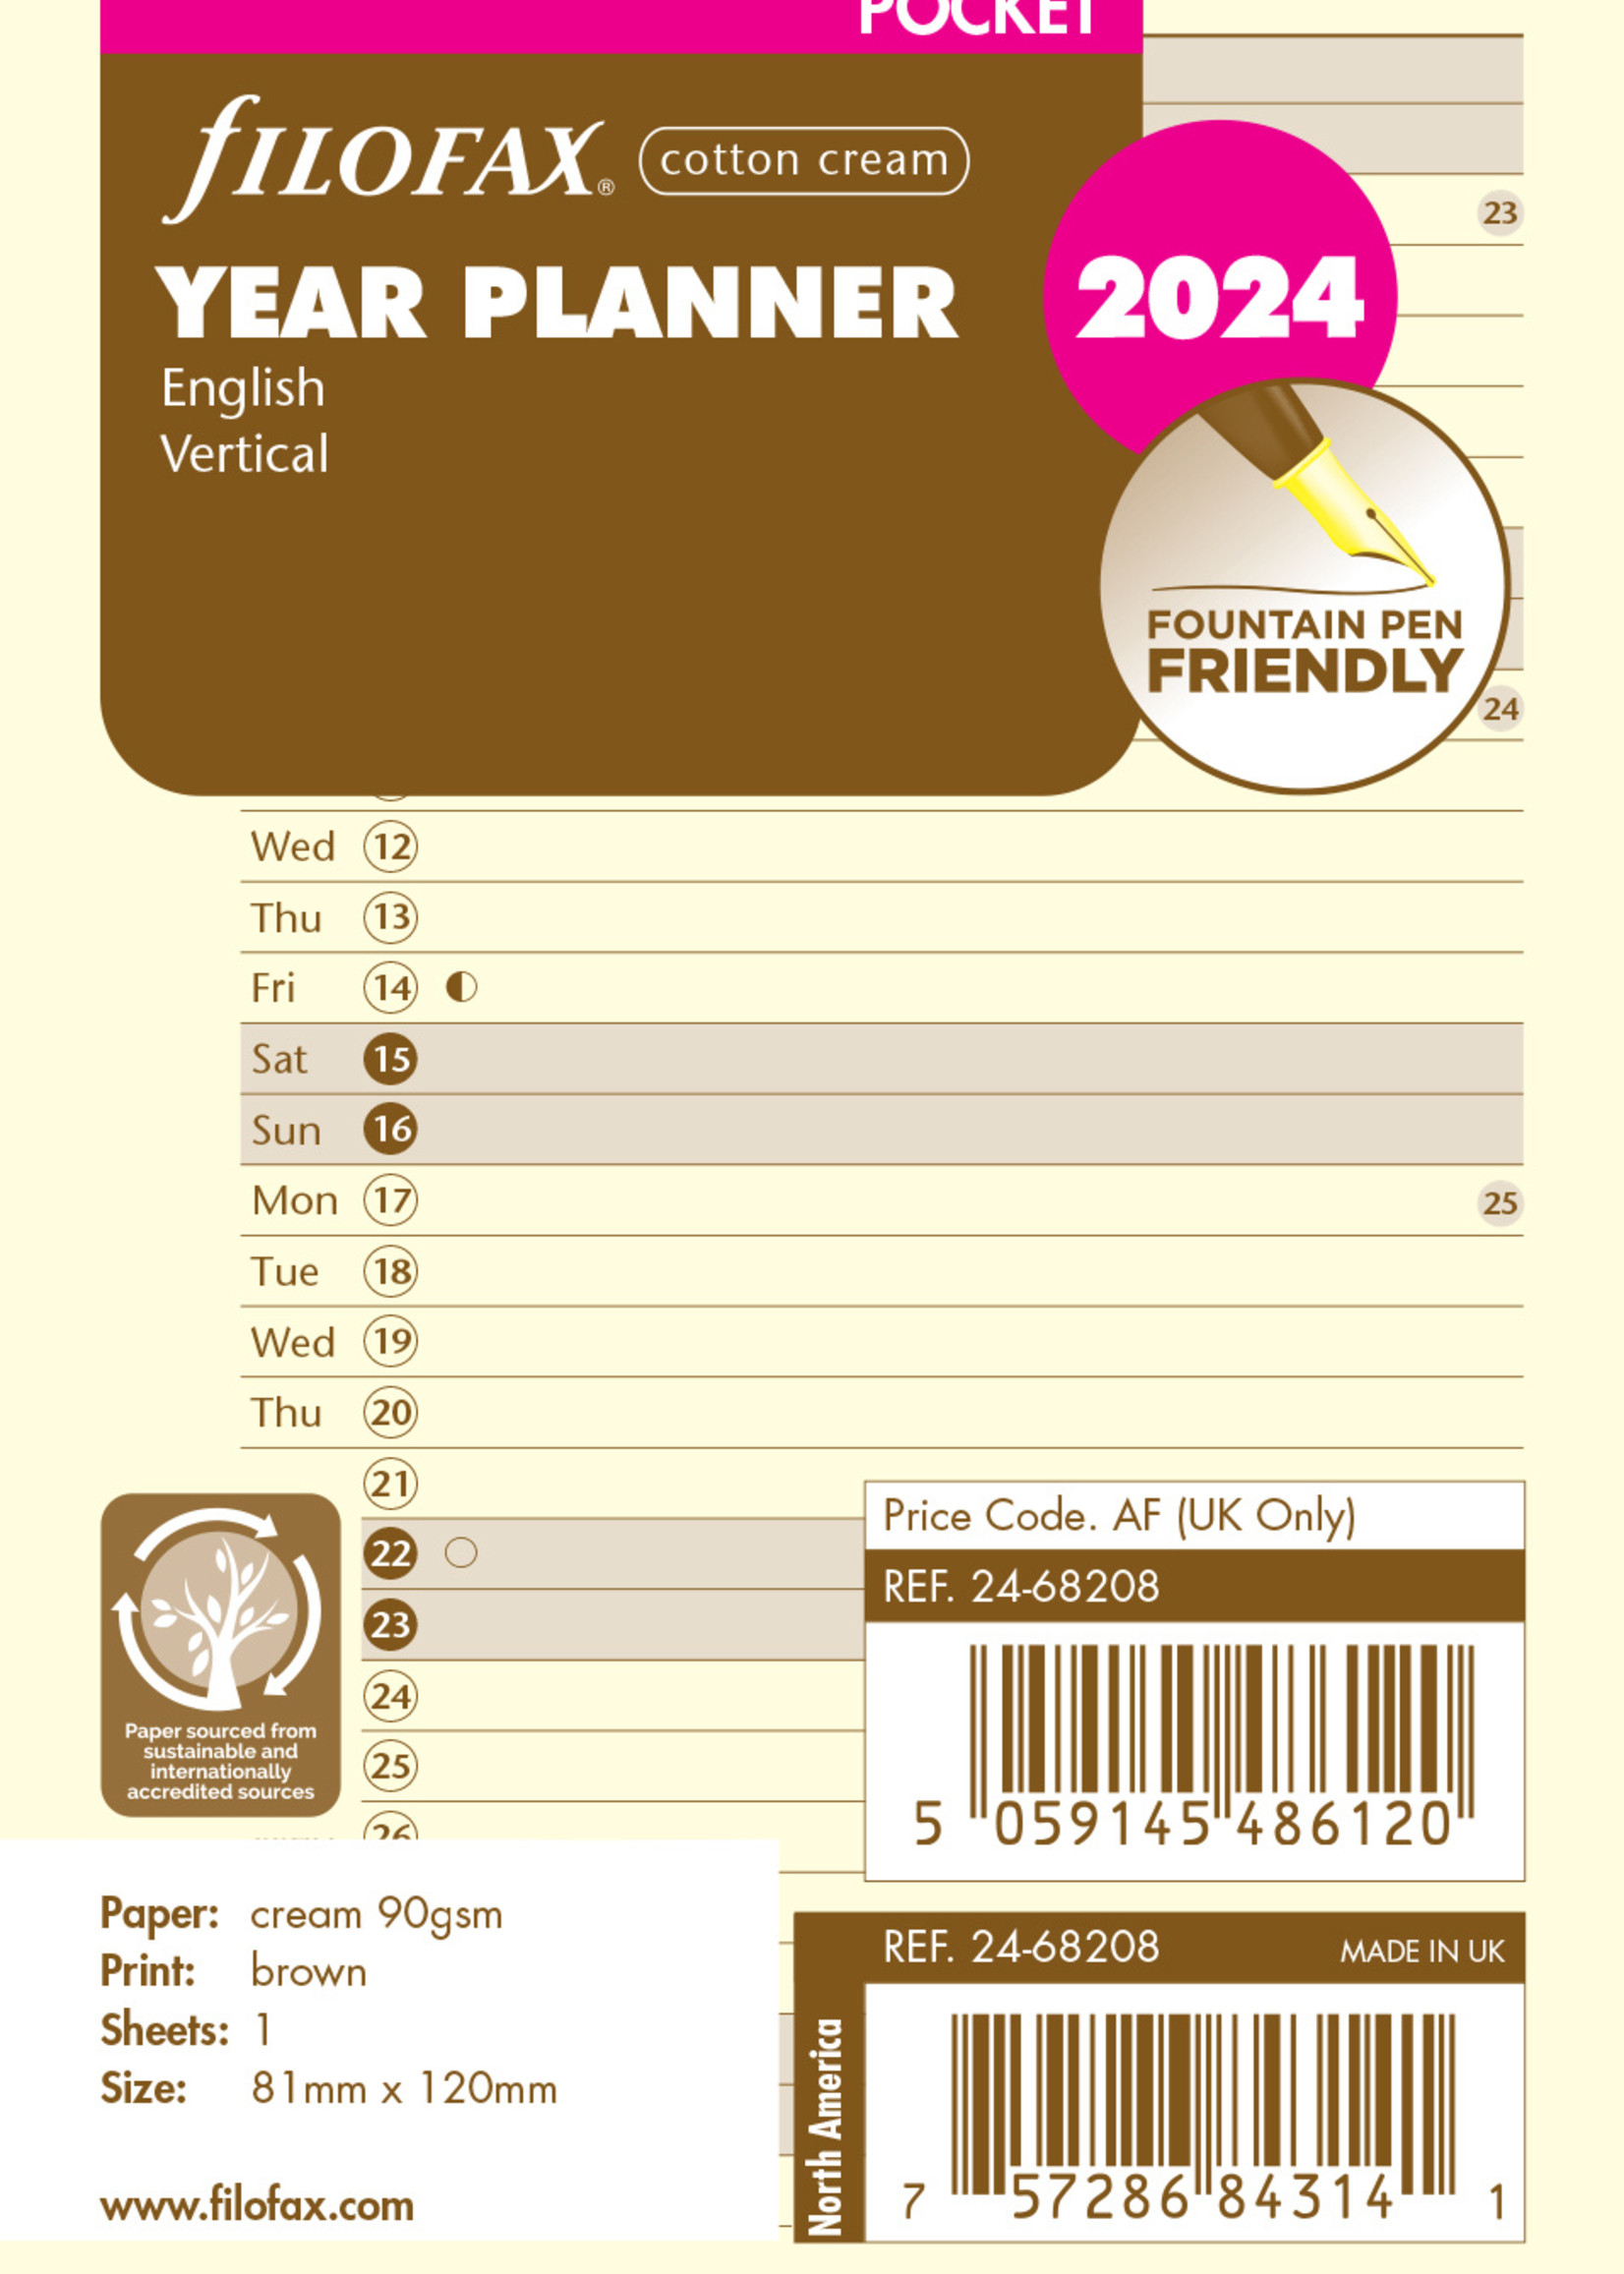 Filofax Pocket Kalendereinlage 2024 Jahresplaner Leporello Cotton Cream Englisch